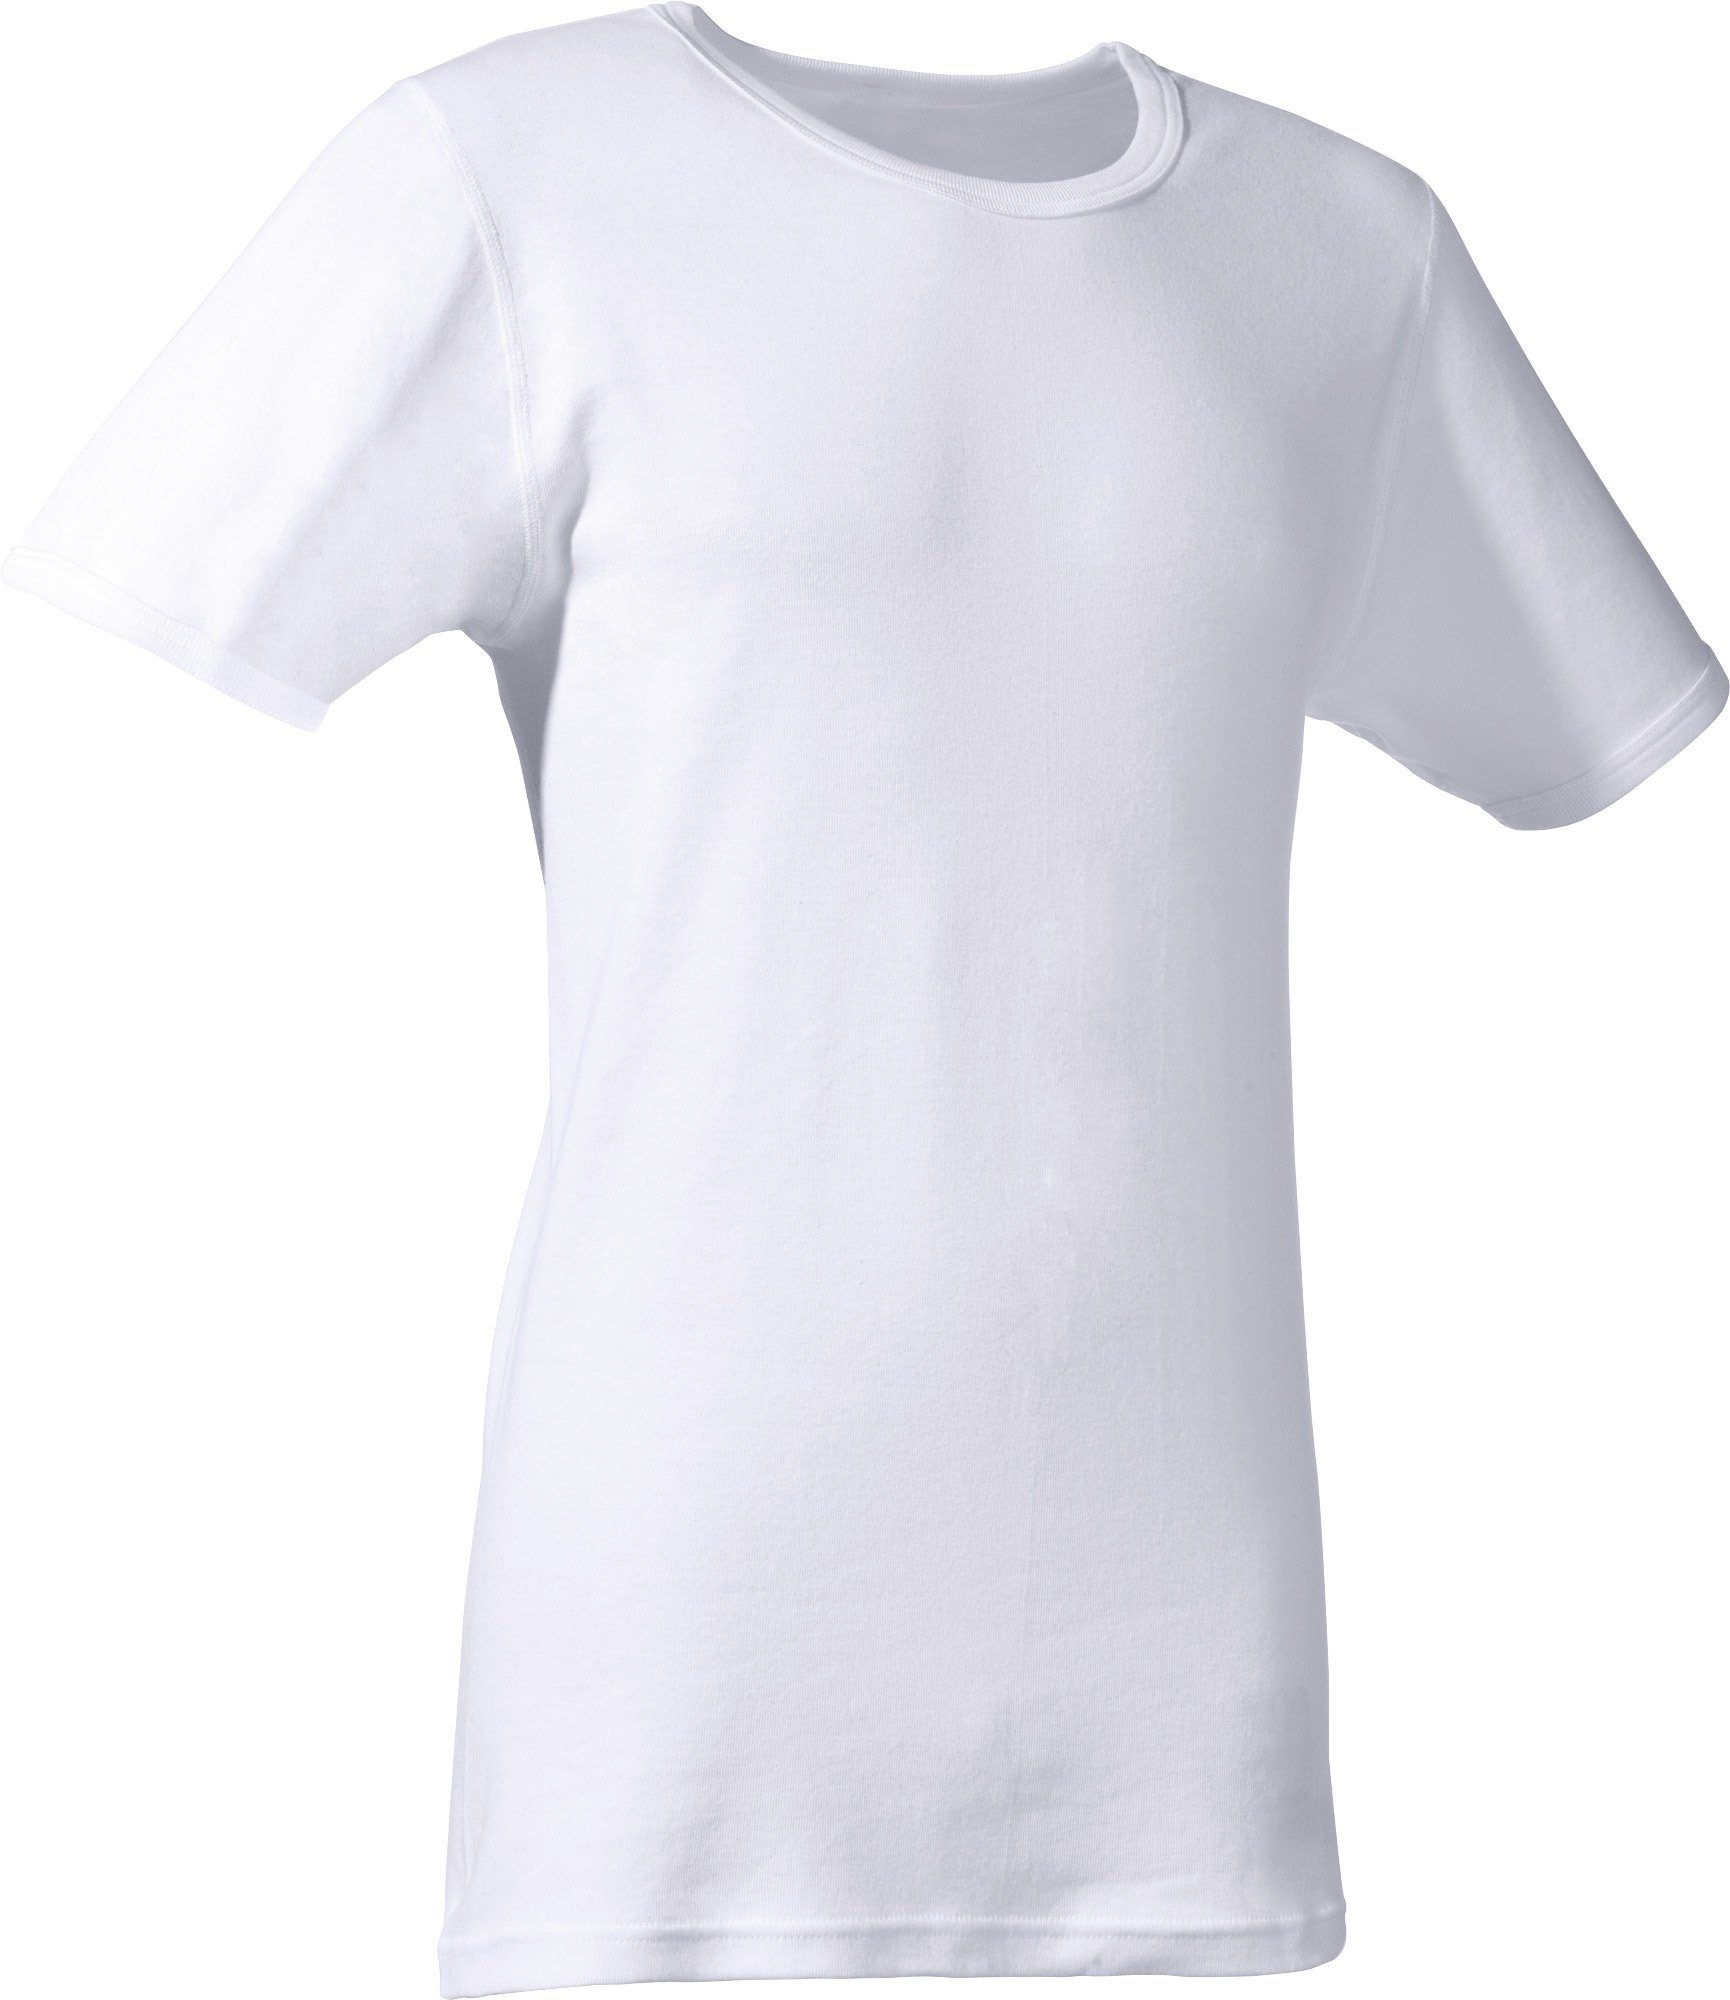 Honpo supergünstiger Versandhandel! Erwin Müller T-Shirt Herren-Unterhemd 2er-Pack Uni weiß (2-tlg) Feinripp